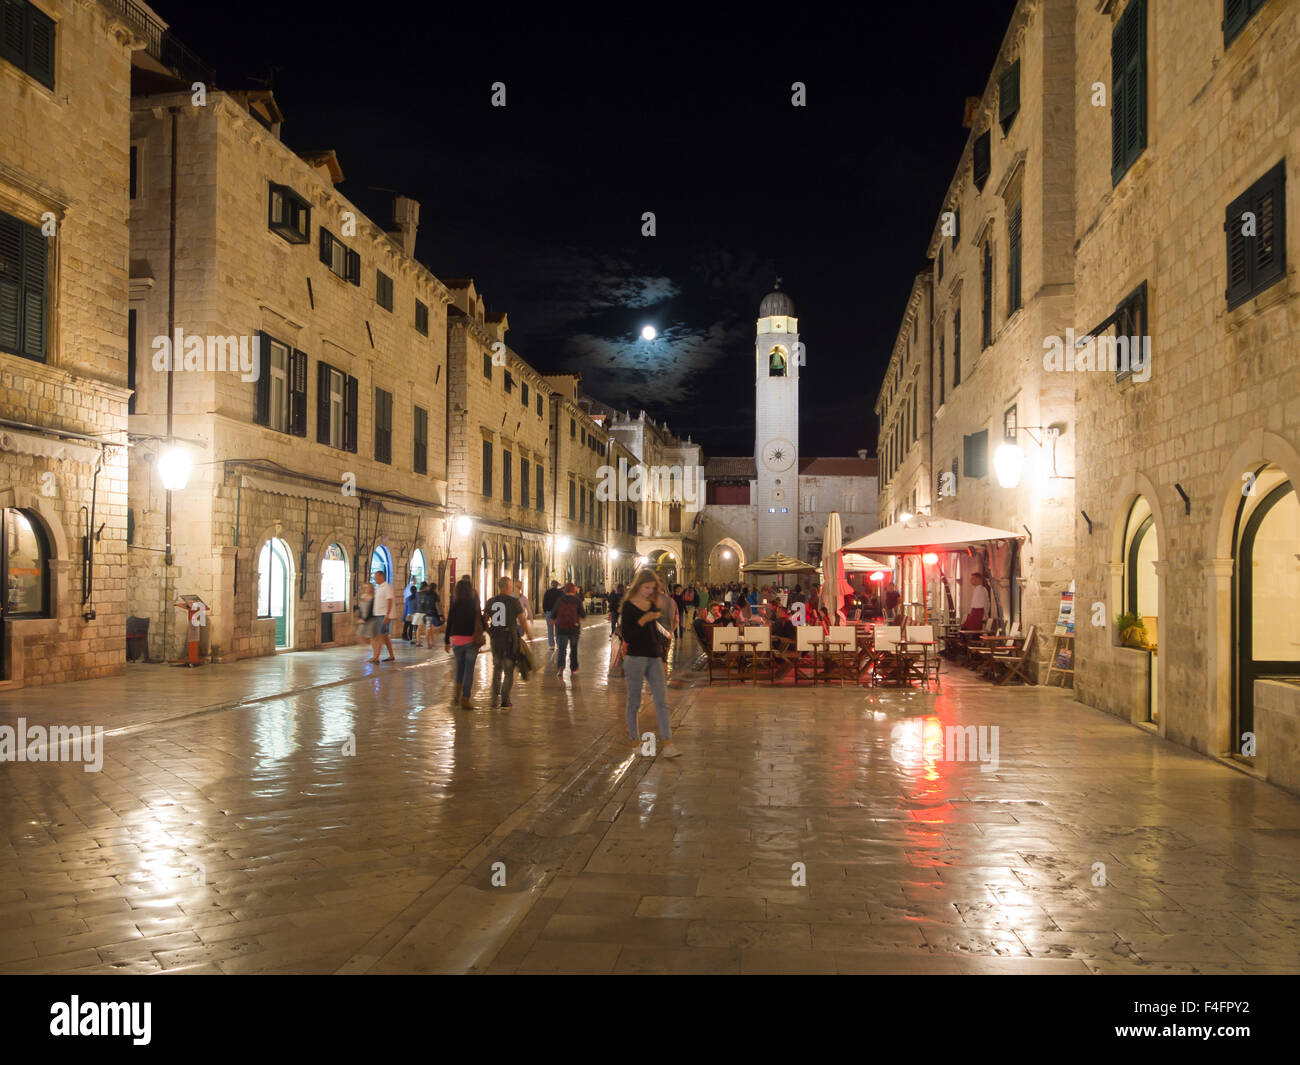 Dubrovnik Croatie par nuit, Stradun, la rue principale pavée de calcaire reflétant les lumières, les touristes et les restaurants, la pleine lune Banque D'Images